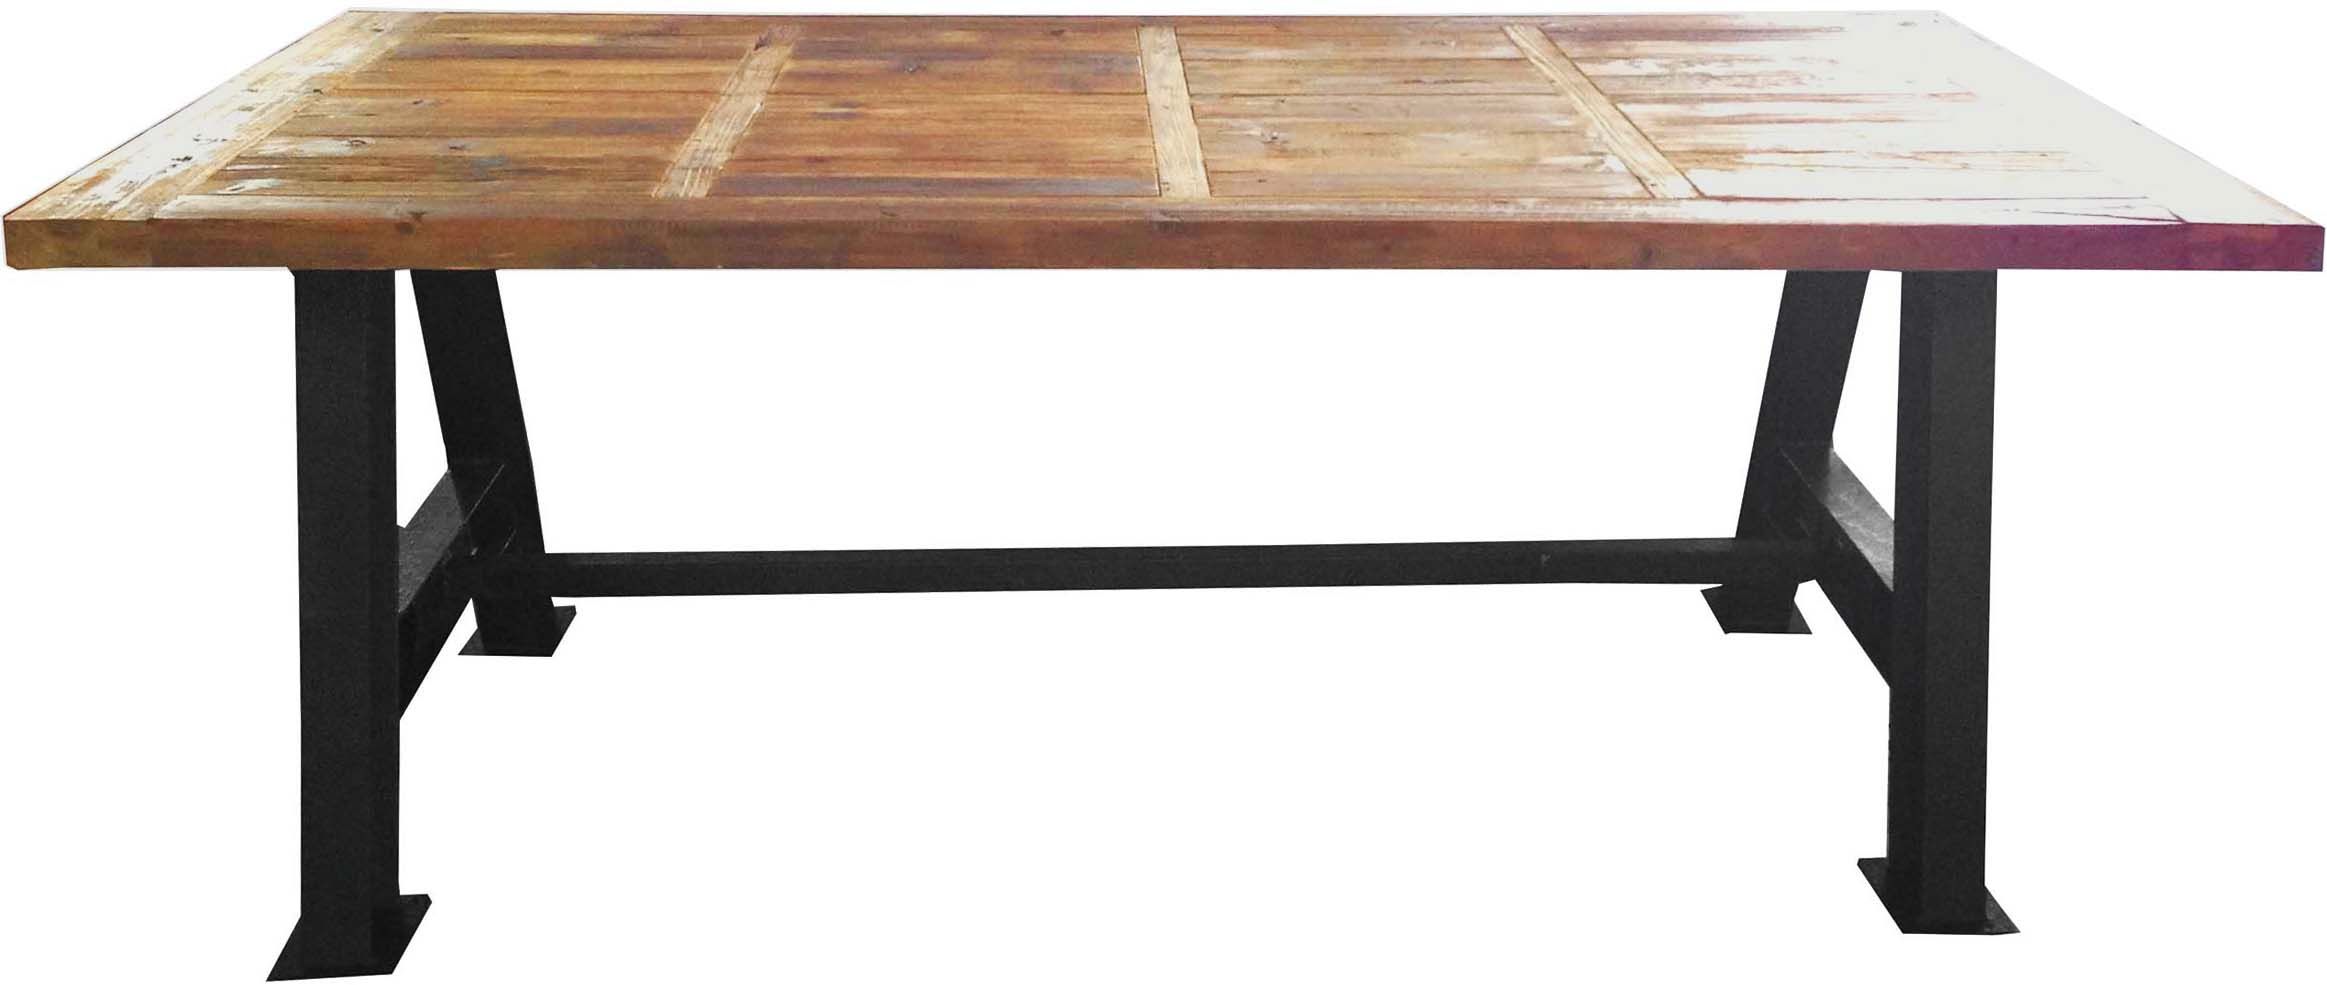 Grande table industrielle bois et métal 200 cm